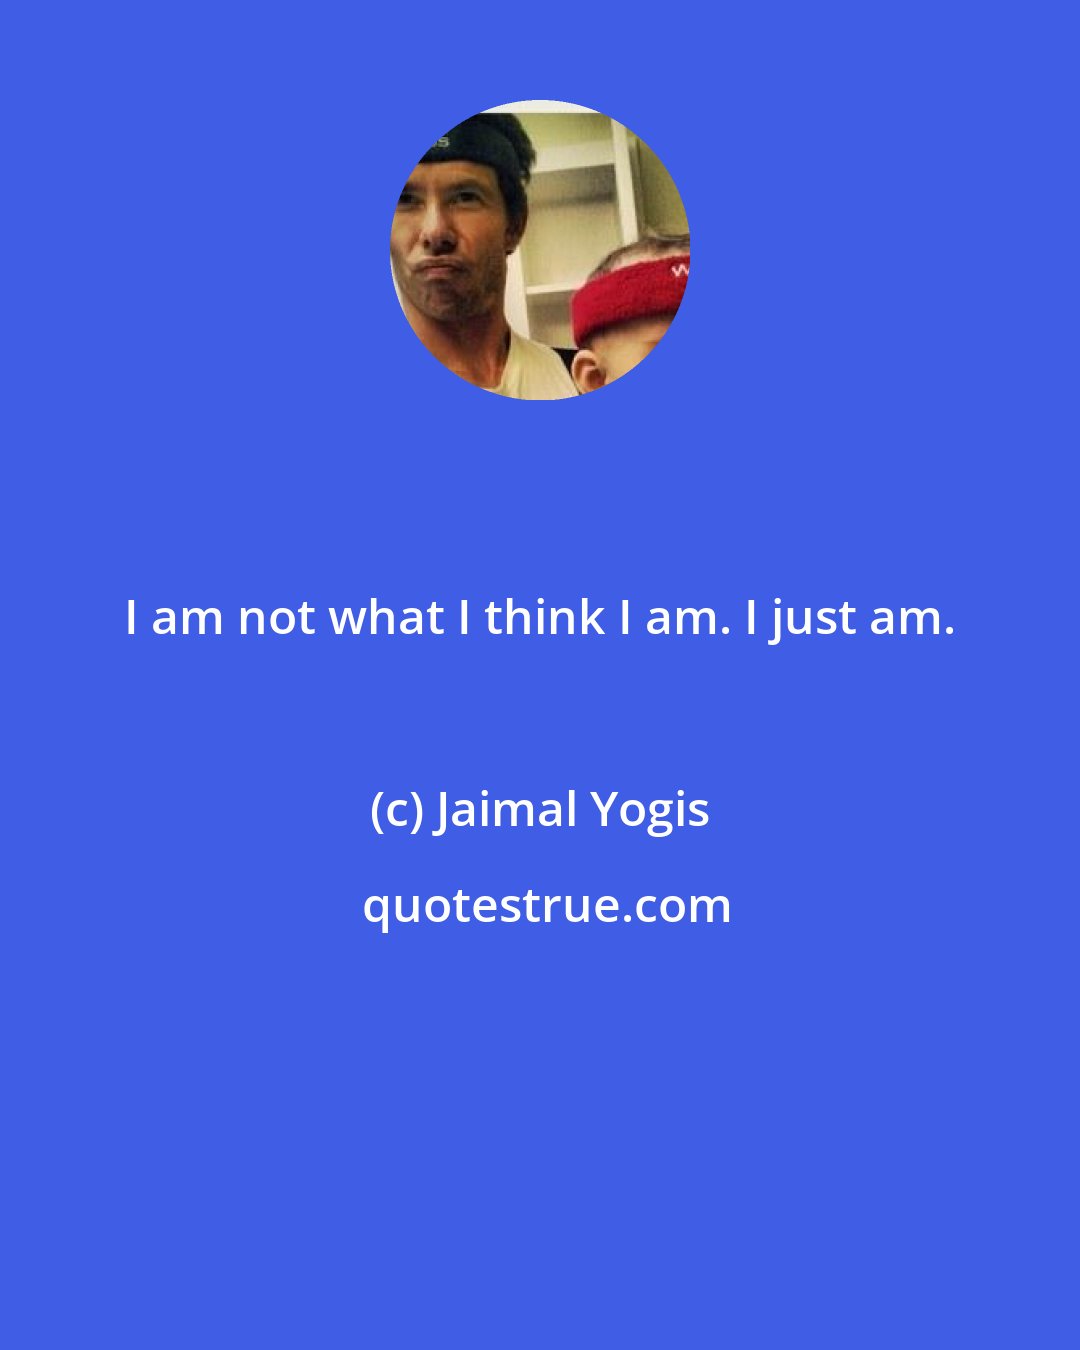 Jaimal Yogis: I am not what I think I am. I just am.